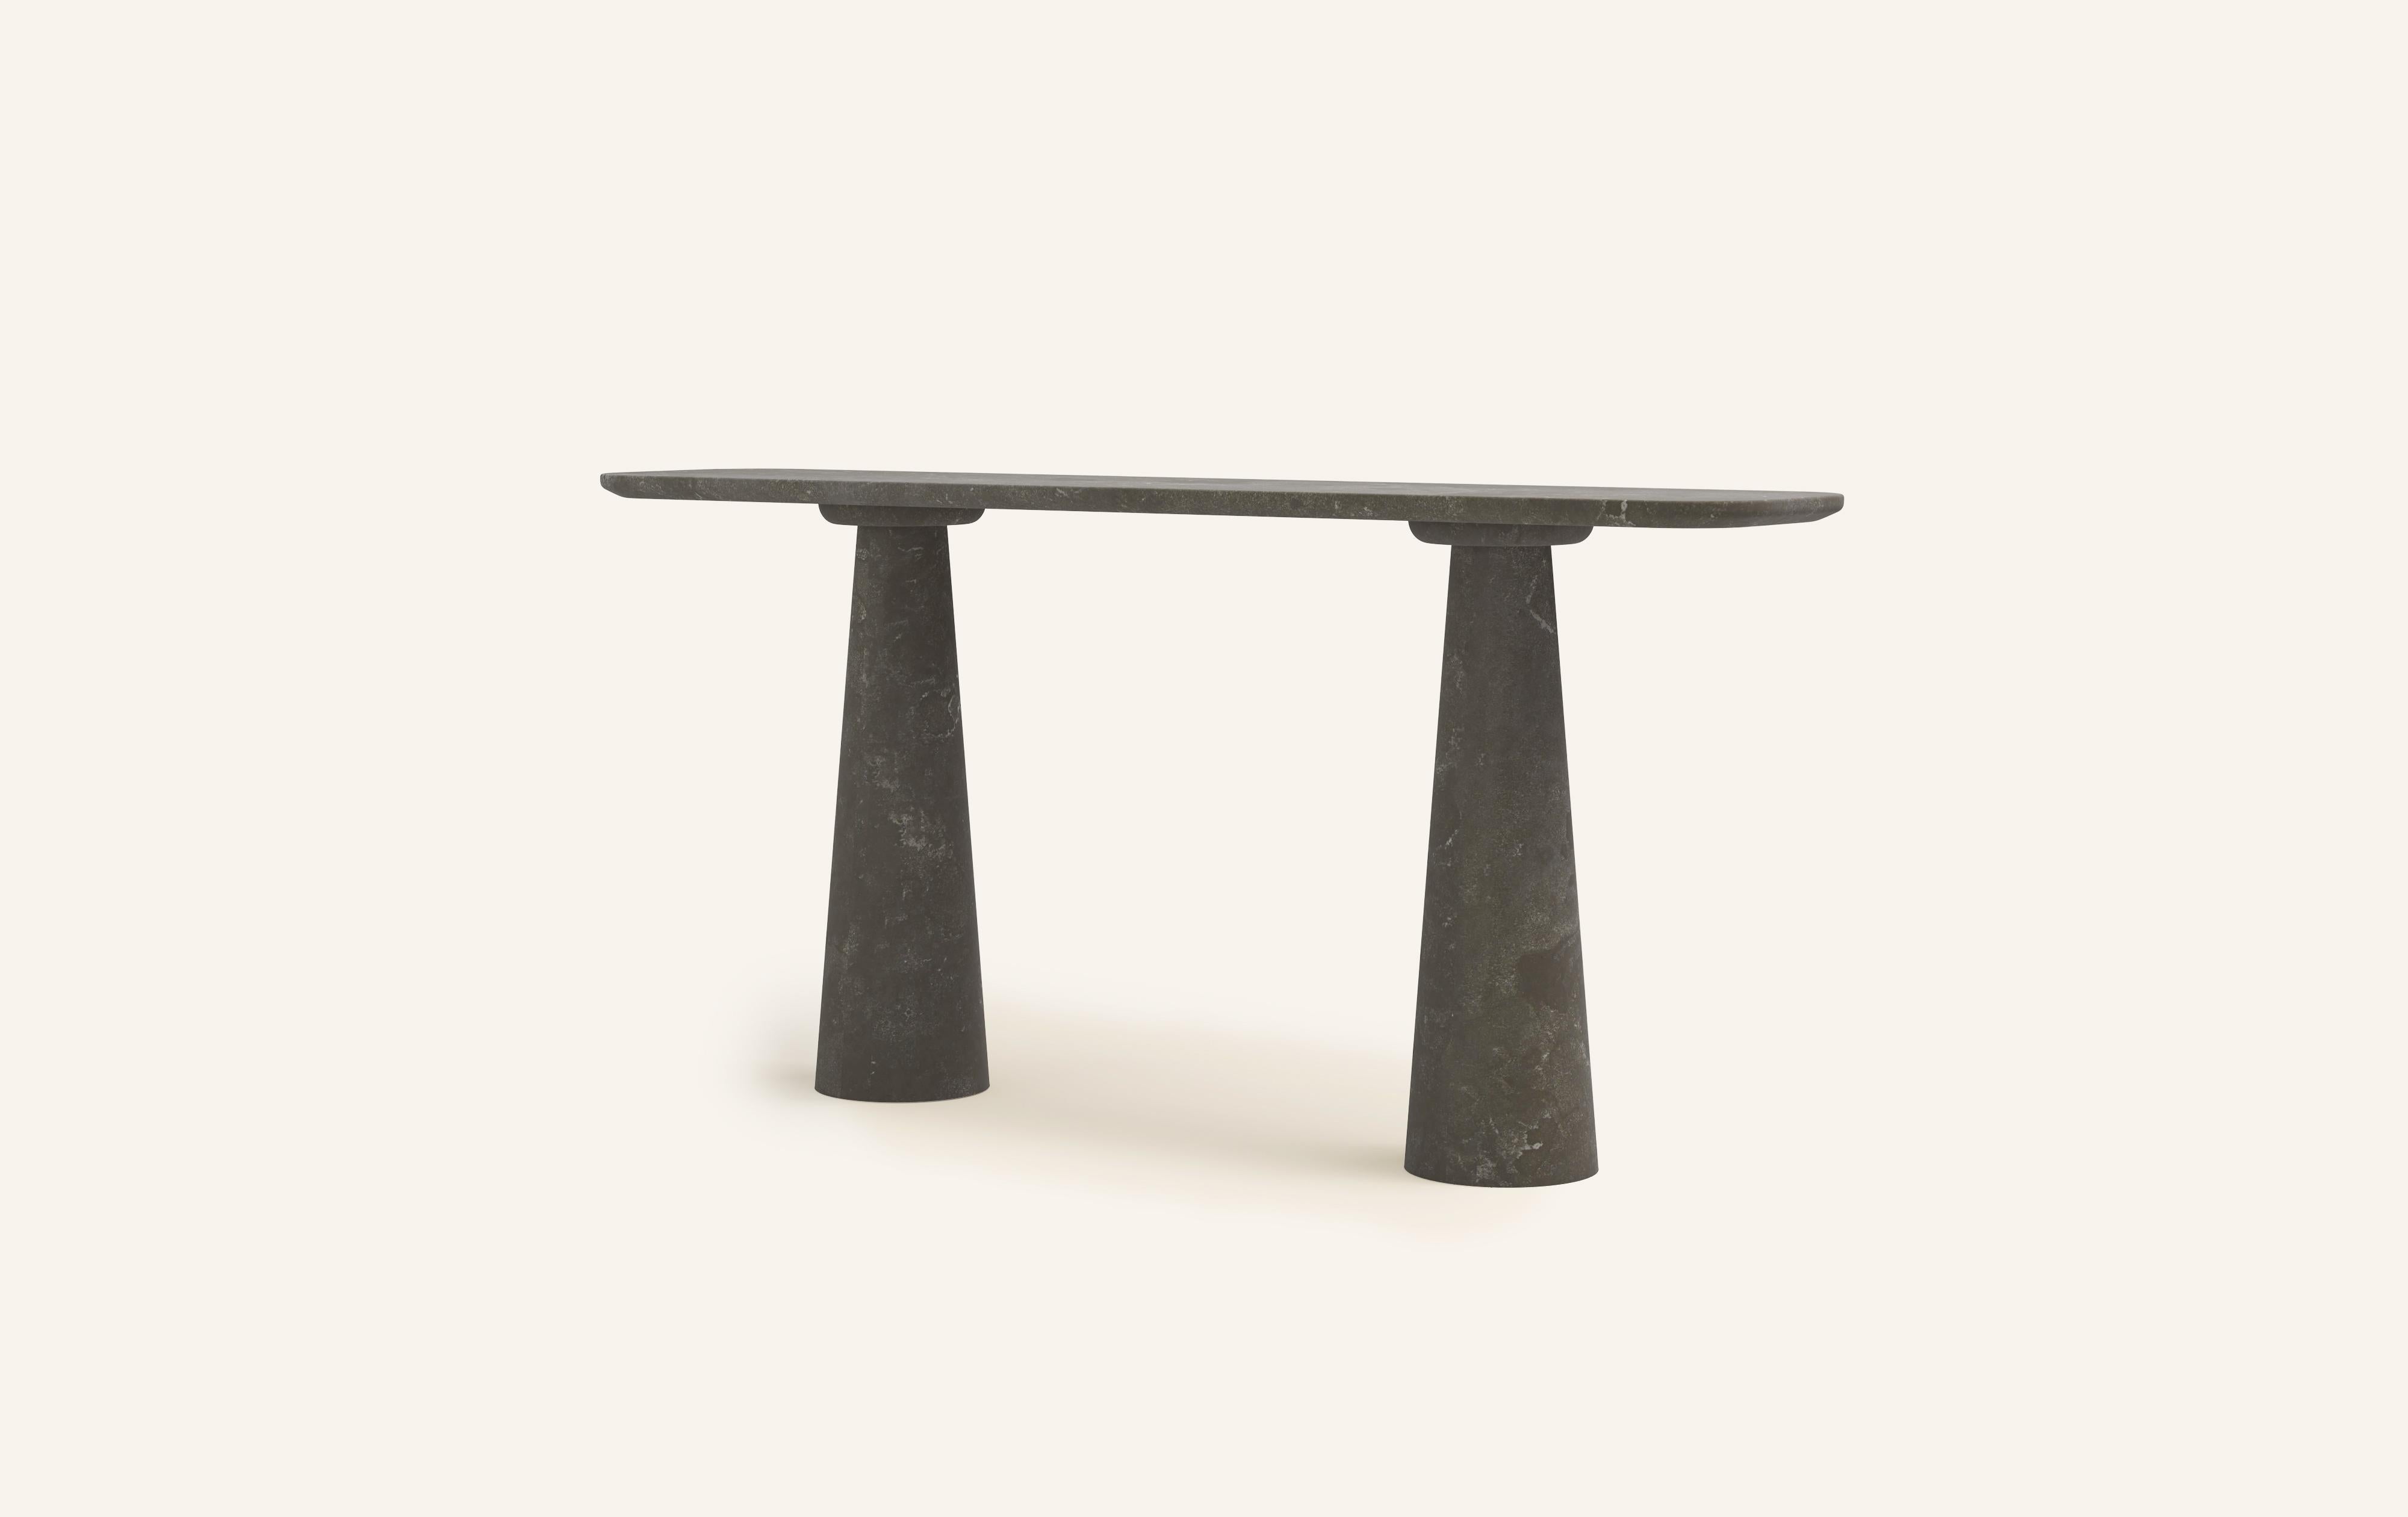 American FORM(LA) Cono Console Table 60”L x 15”W x 33”H Nero Petite Granite For Sale